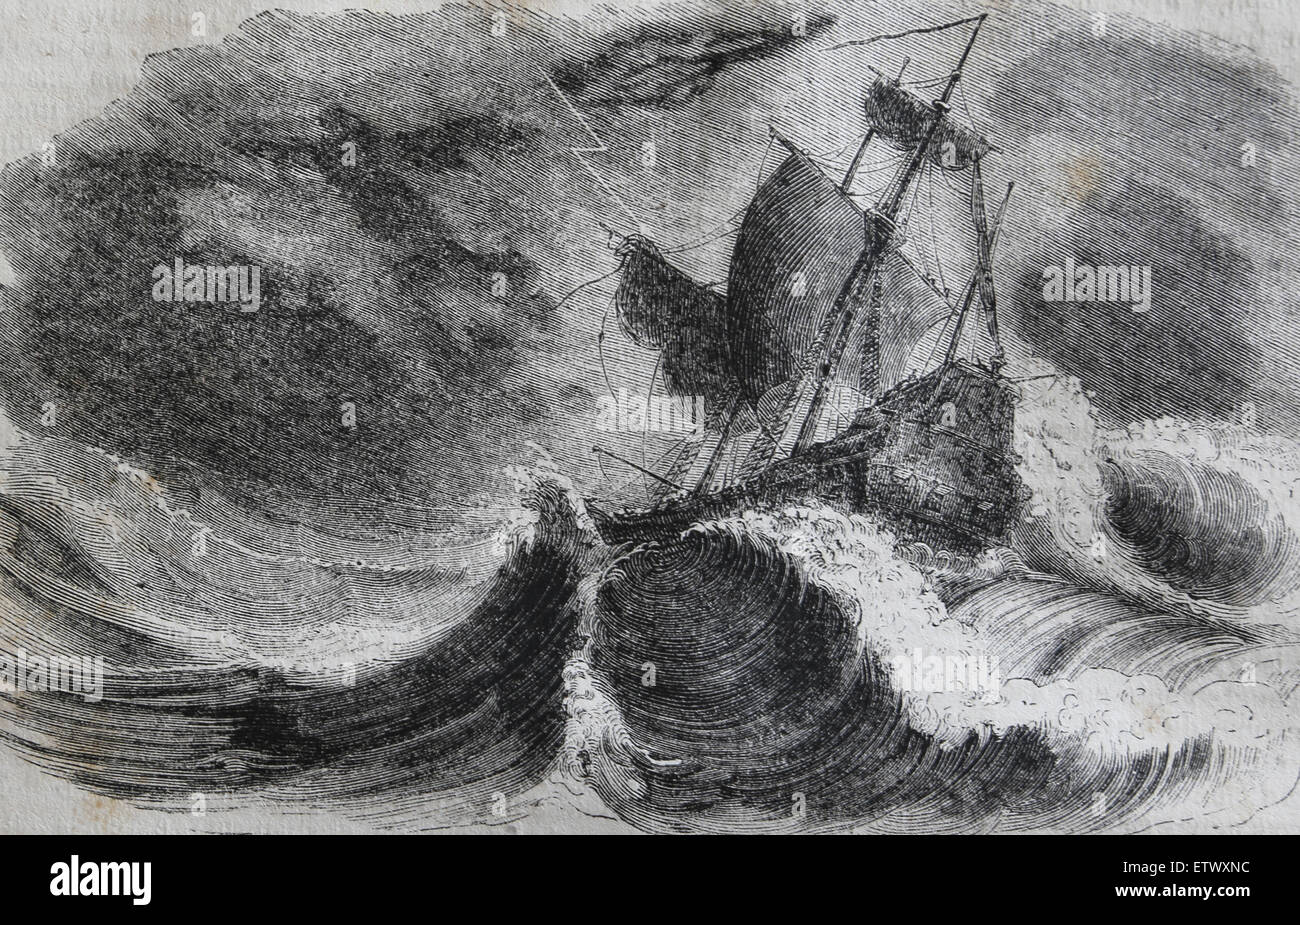 Christopher Columbus (1450-1506). Explorer, Navigation. Entdecker der neuen Welt. Sturm, Küste von Honduras. Gravur. 19. Jh. Stockfoto